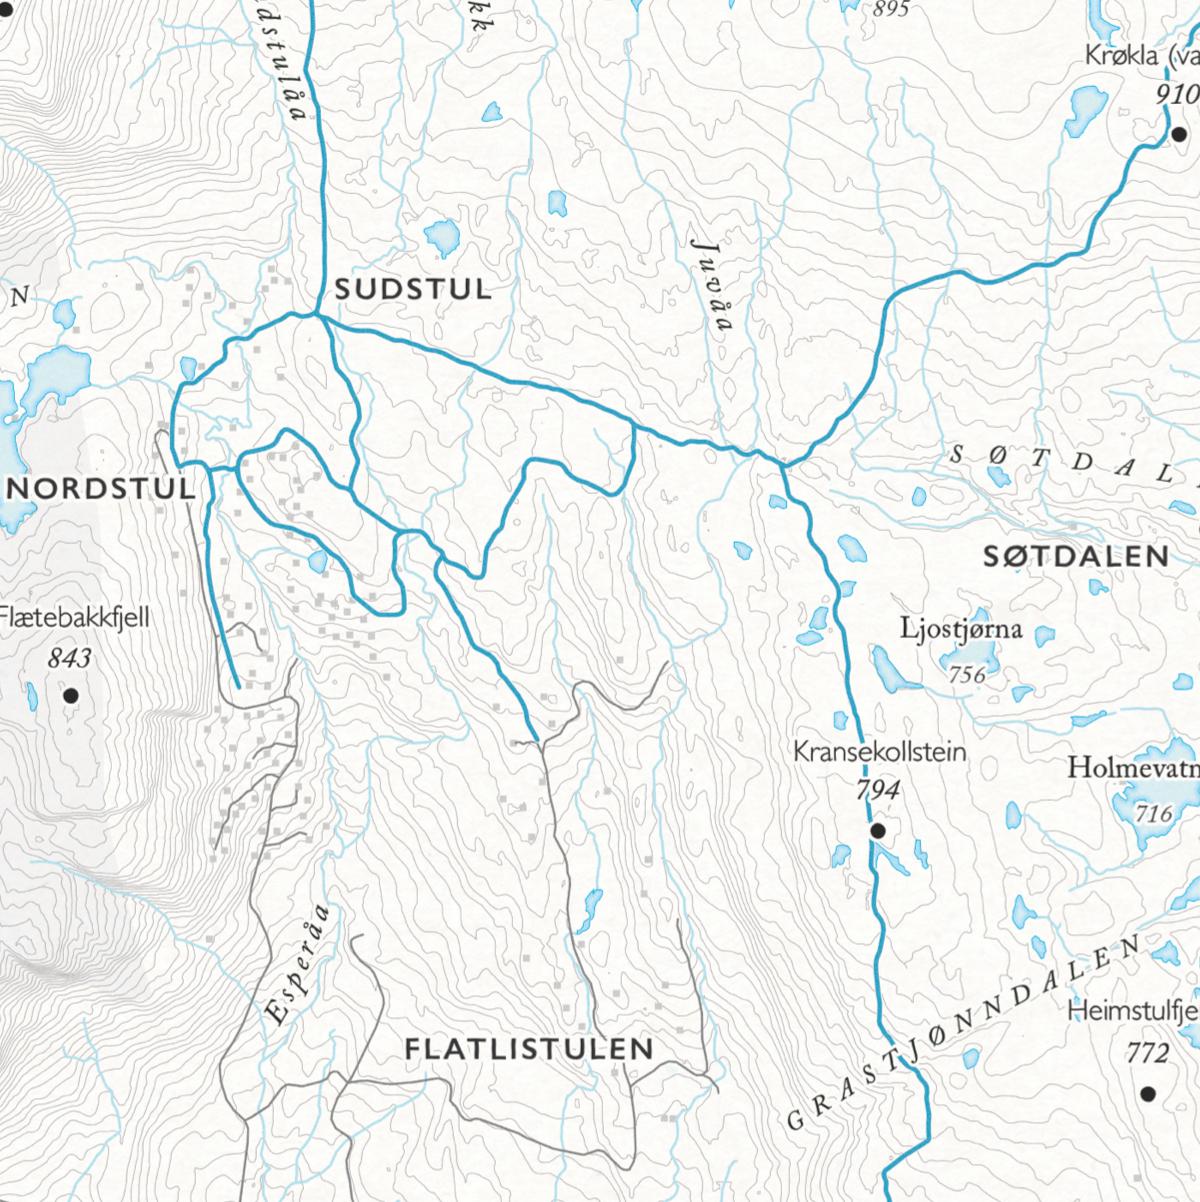 Langrennskart over Blefjell som viser Sudstul, Søtdalen og Flatlistulen